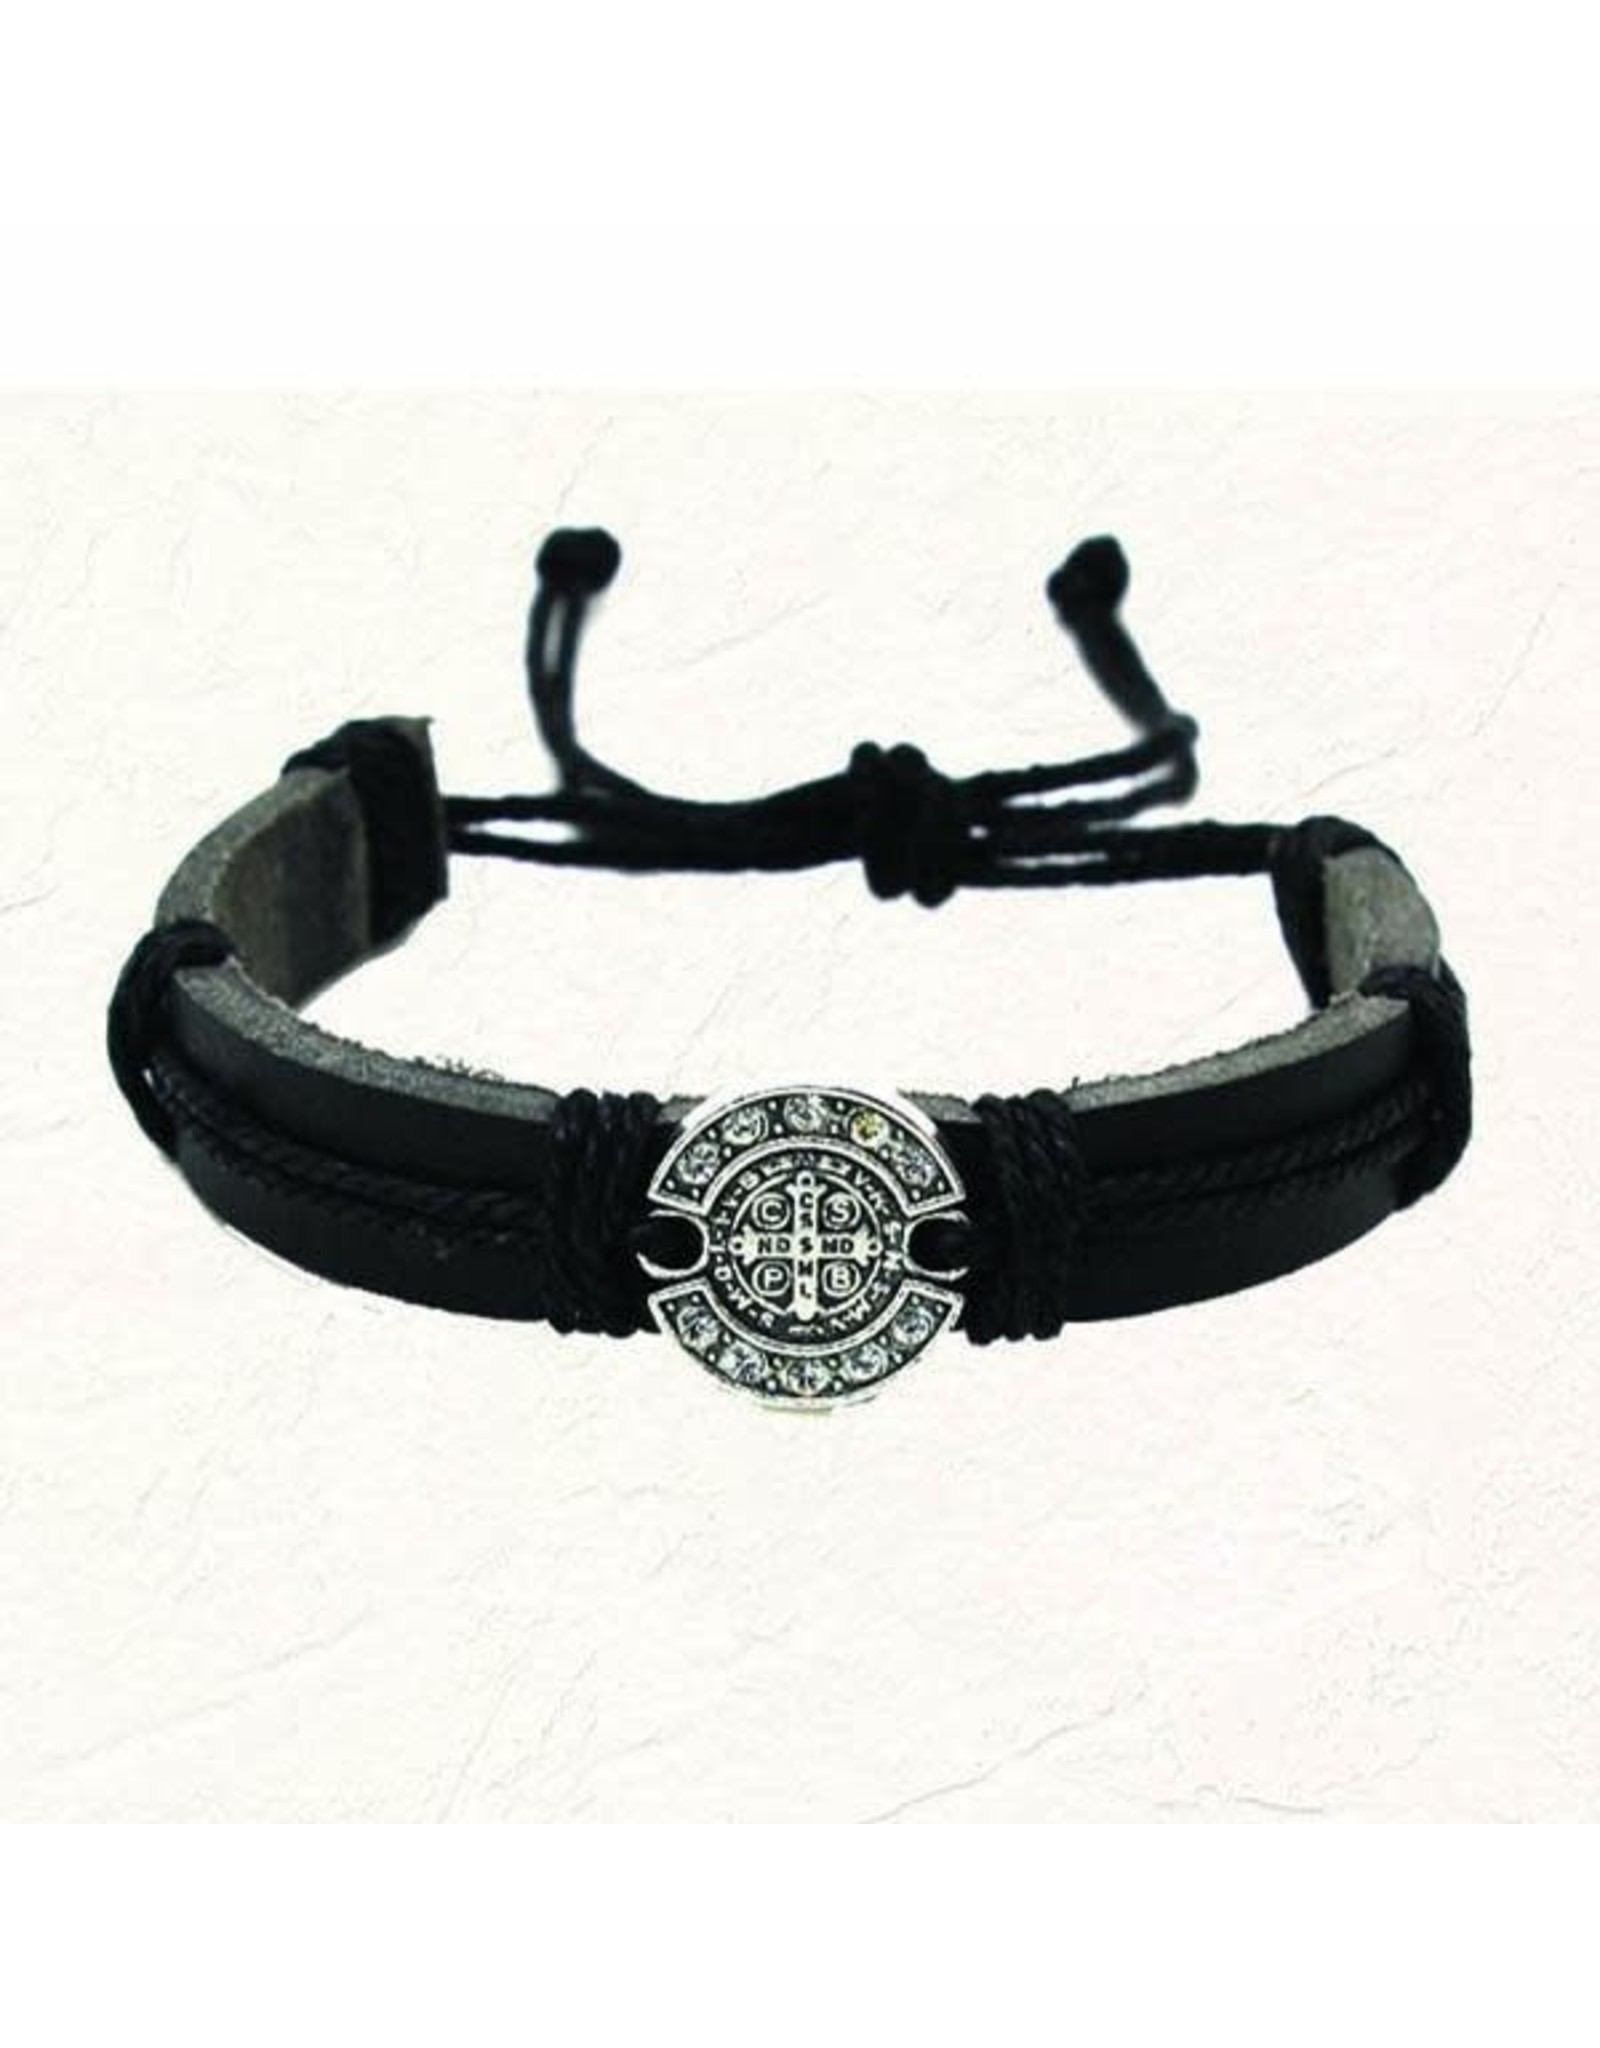 Black “Leather Feel” St. Benedict Slip Knot Bracelet